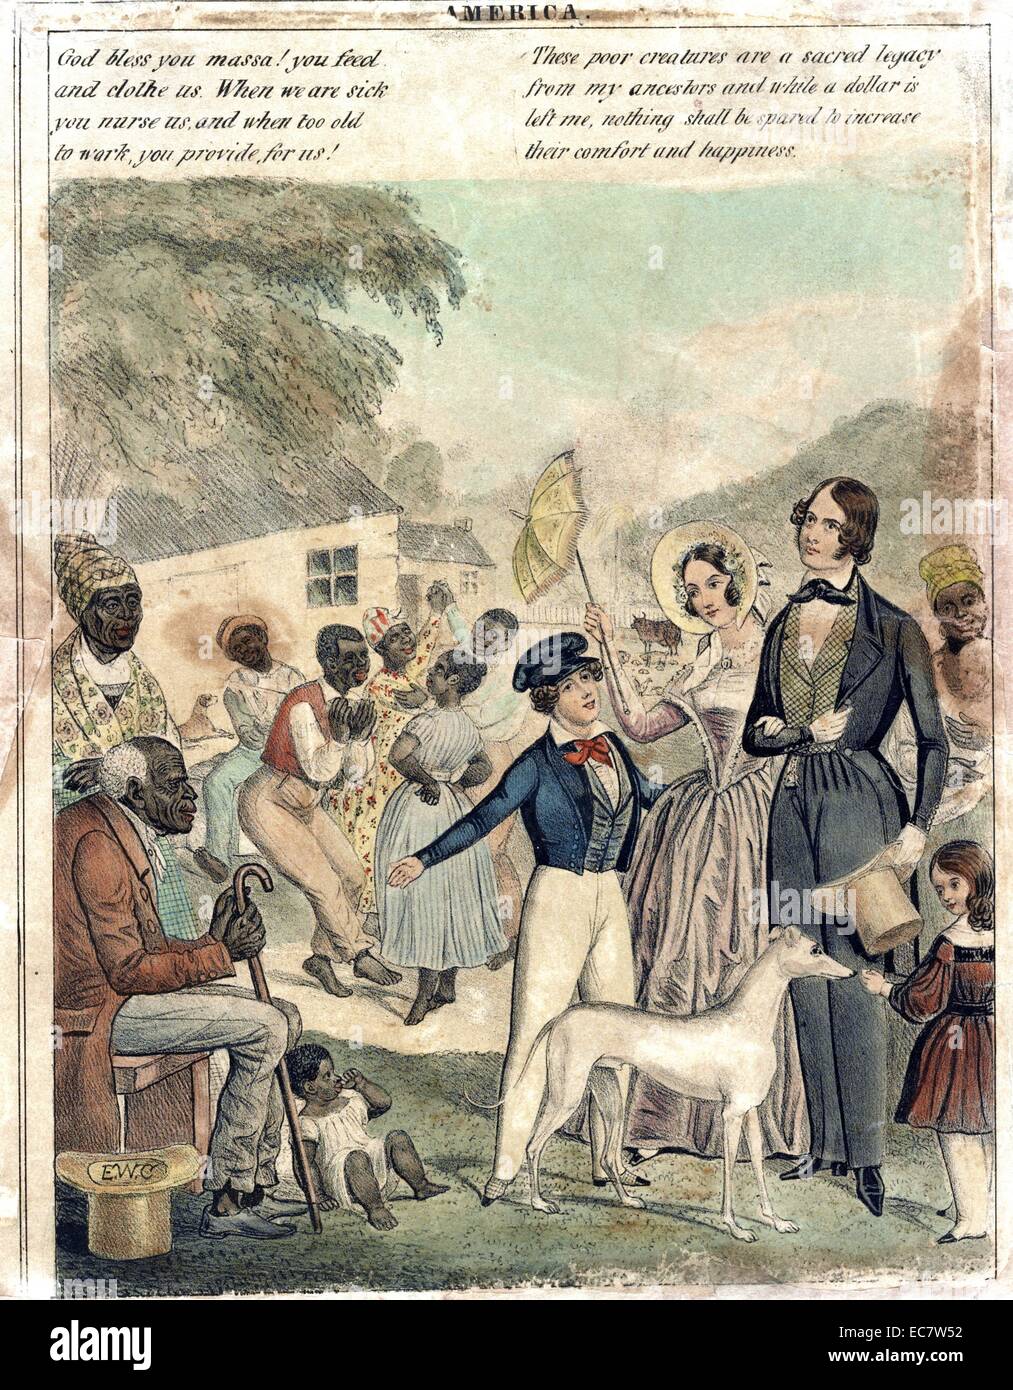 Drucken zeigt eine idealisierte Darstellung der Amerikanischen Sklaverei und die Bedingungen der Schwarzen unter diesem System im Jahre 1841. In der Erwägung, dass die weißen Familie angezeigt werden spezielle Privilegien, wie zum Beispiel intelligente Kleidung und Haustiere haben. Stockfoto